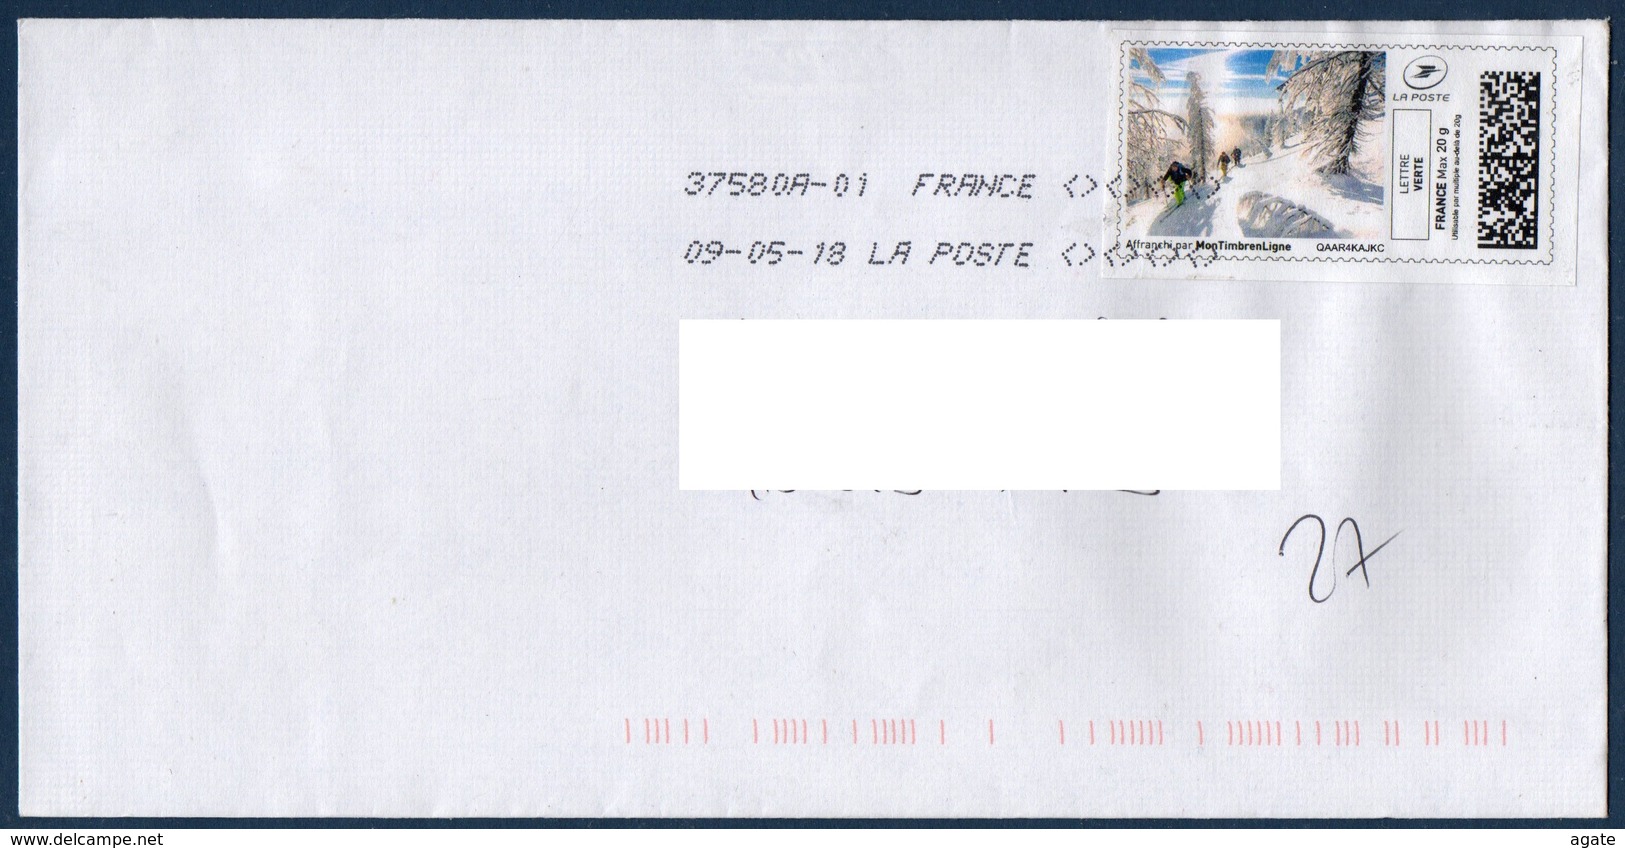 Montimbrenligne Randonnée Lettre Verte Sur Enveloppe Date 09/05/18 - Timbres à Imprimer (Montimbrenligne)